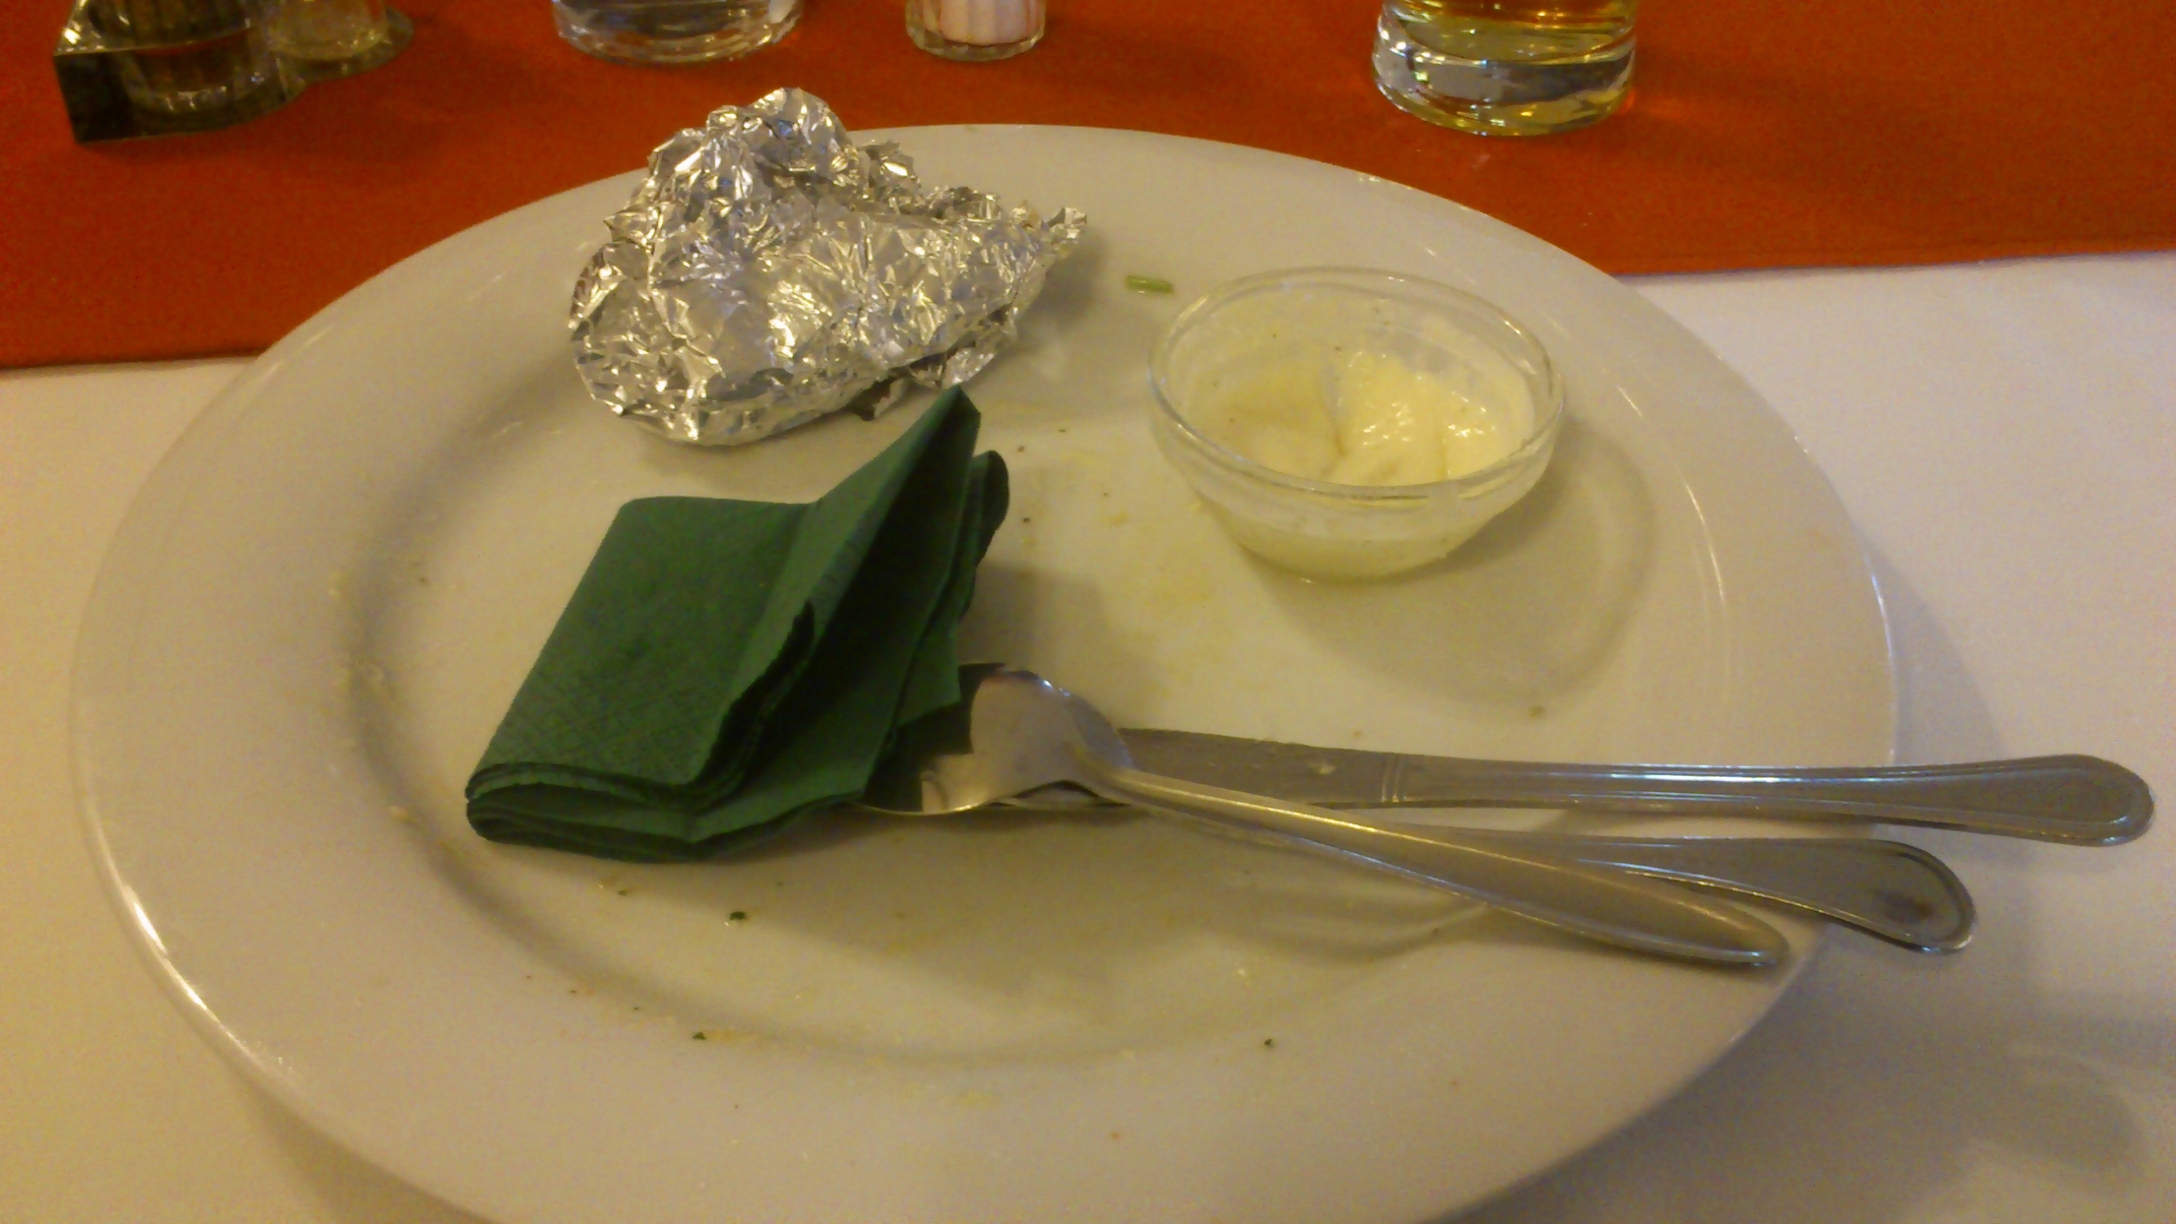 Lilahagymával, füstölt csülökkel töltött sajt, roston - utána :-)